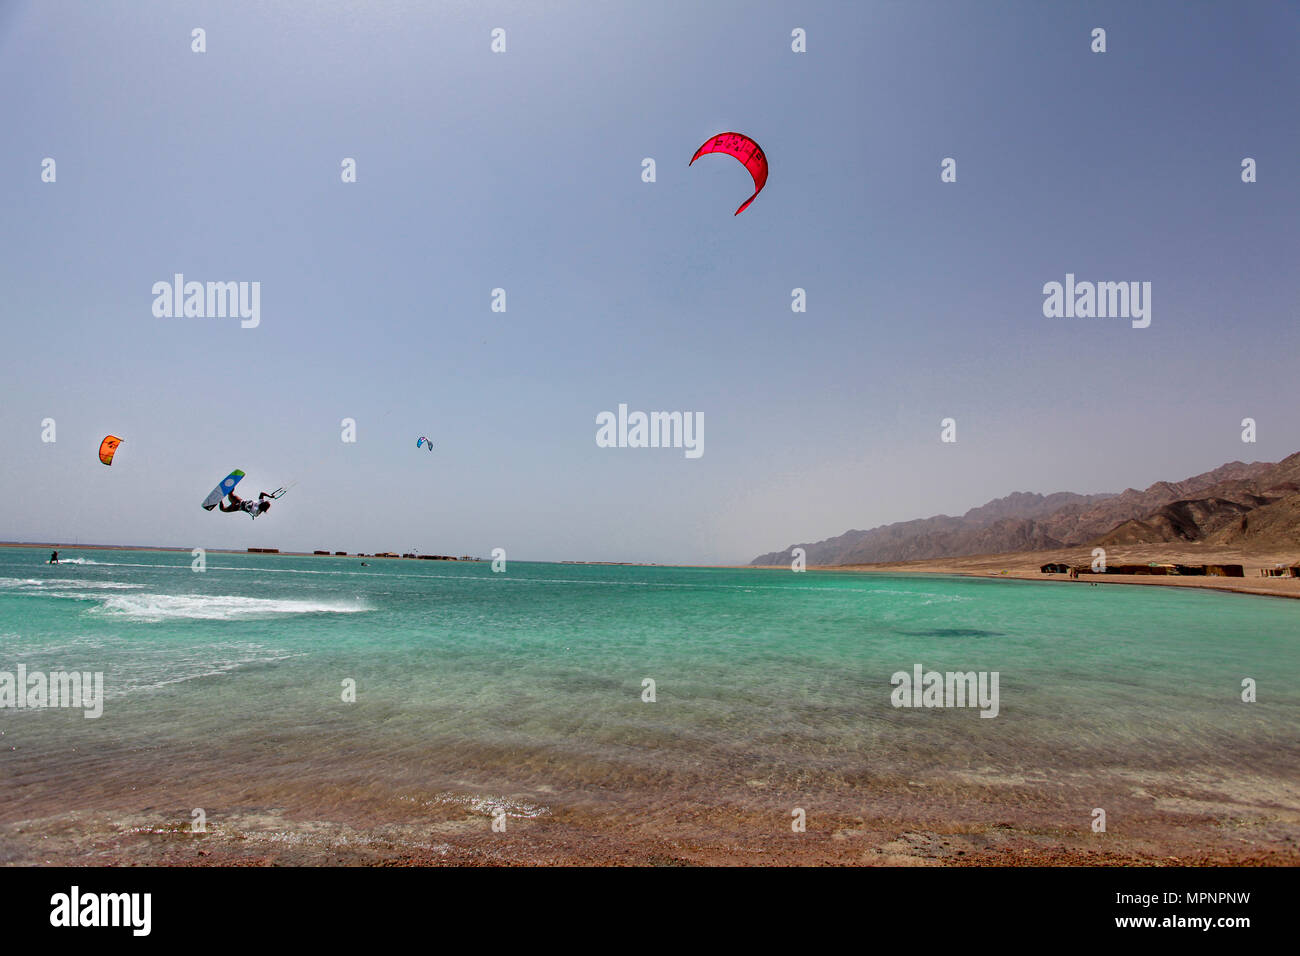 Kite surfing at the Blue Lagoon (Dahab), Sinai, Egypt Stock Photo